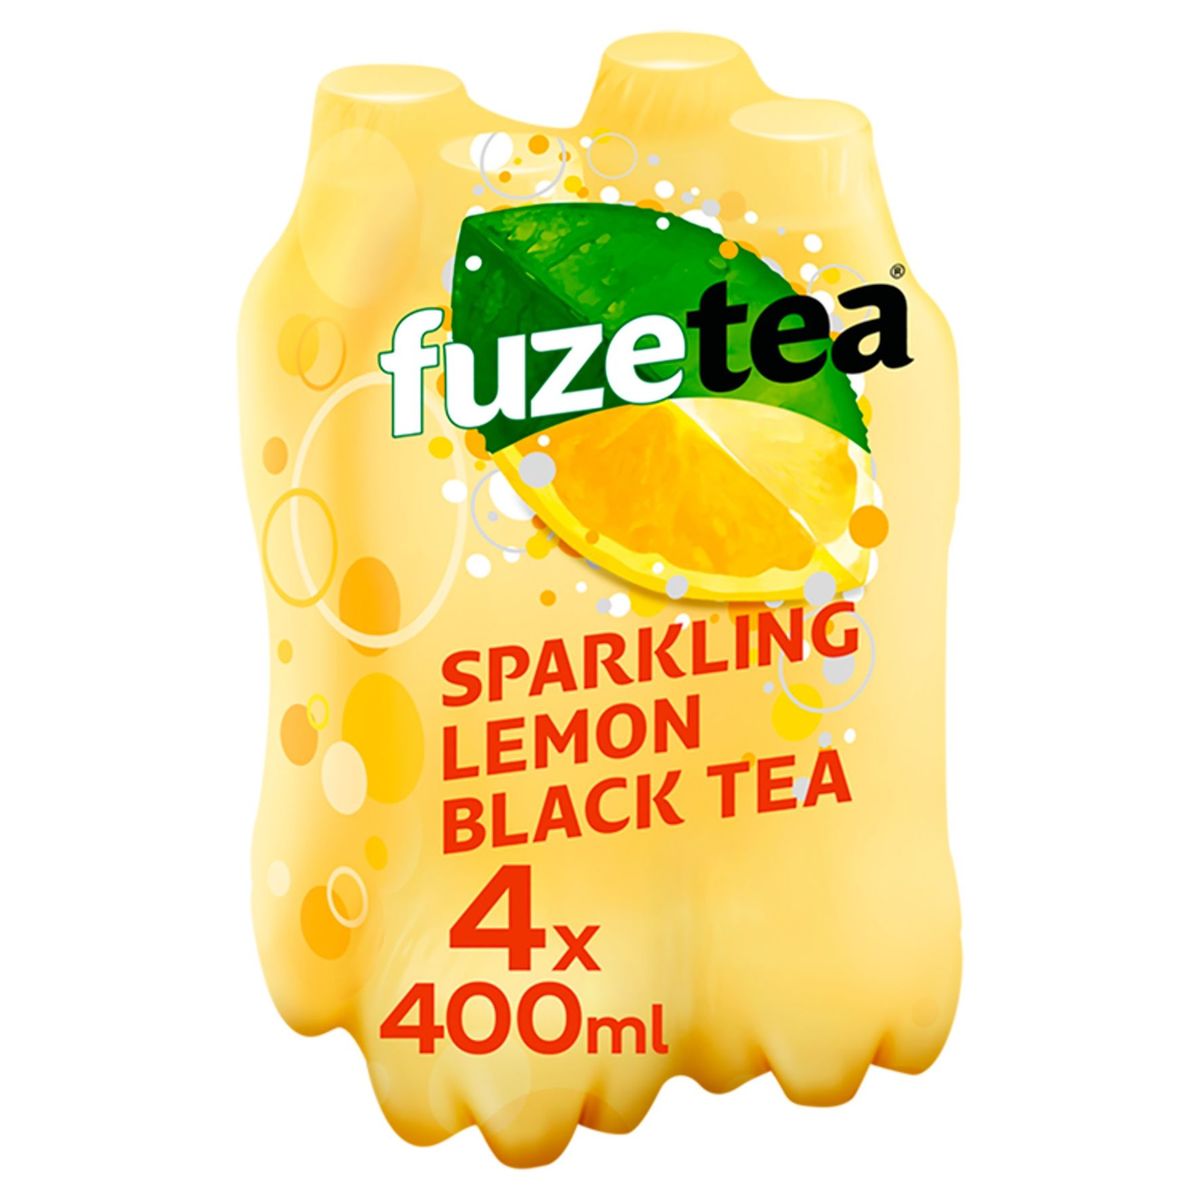 Fuze Tea Black Tea Lemon Sparkling Iced Tea 4 x 400 ml